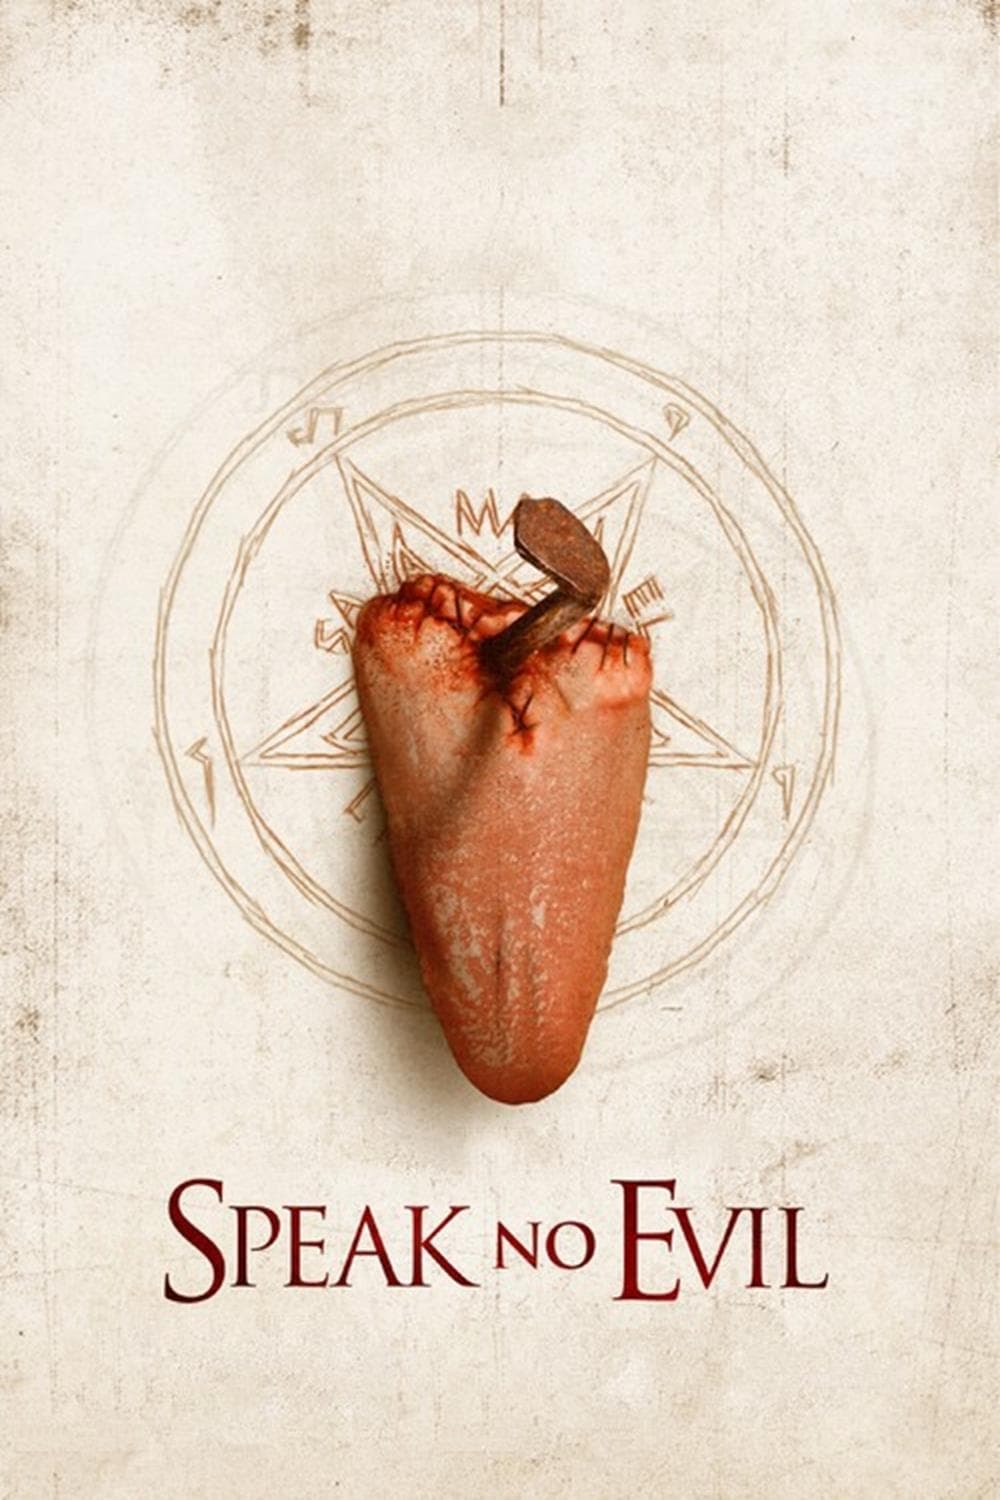 Speak No Evil [Sub-ITA] (2013)